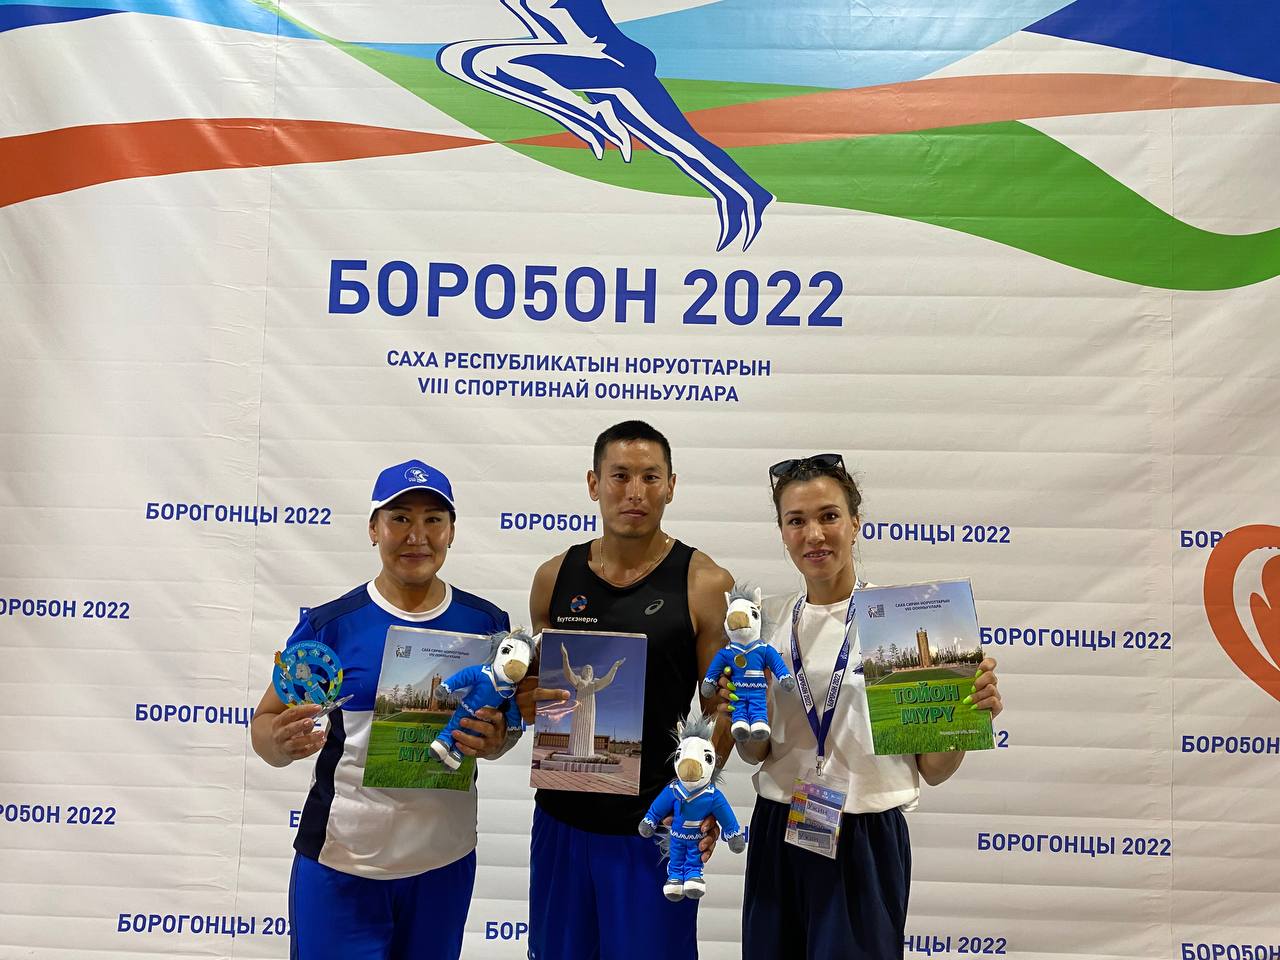 Пресс-конференция по итогам 2 дня Спортивных игр народов Якутии проходит в Усть-Алданском районе